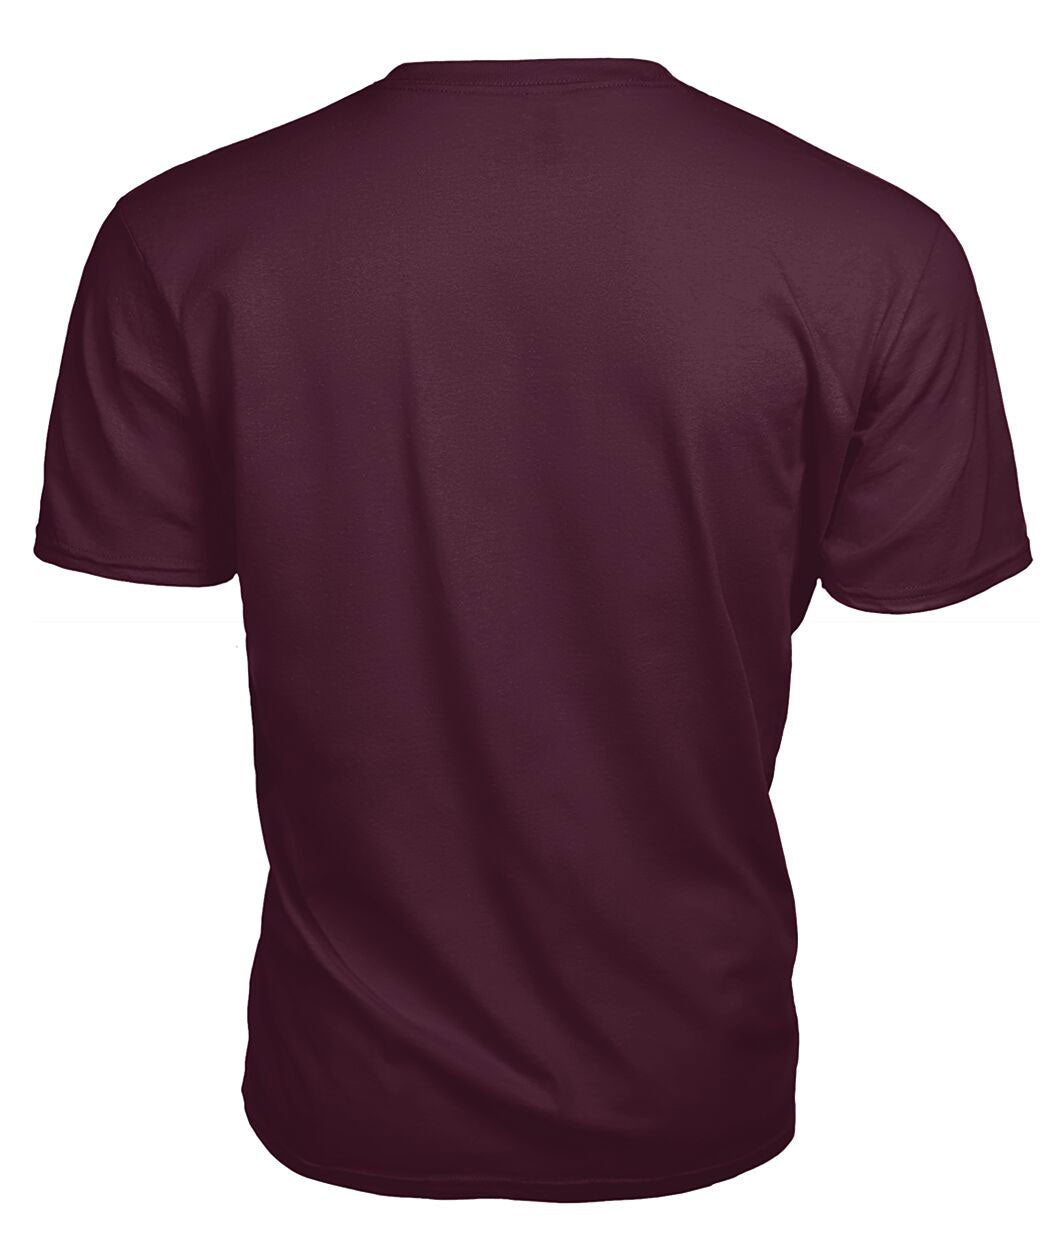 Stewart of Appin Modern Tartan Crest 2D T-shirt - Blood Runs Through My Veins Style